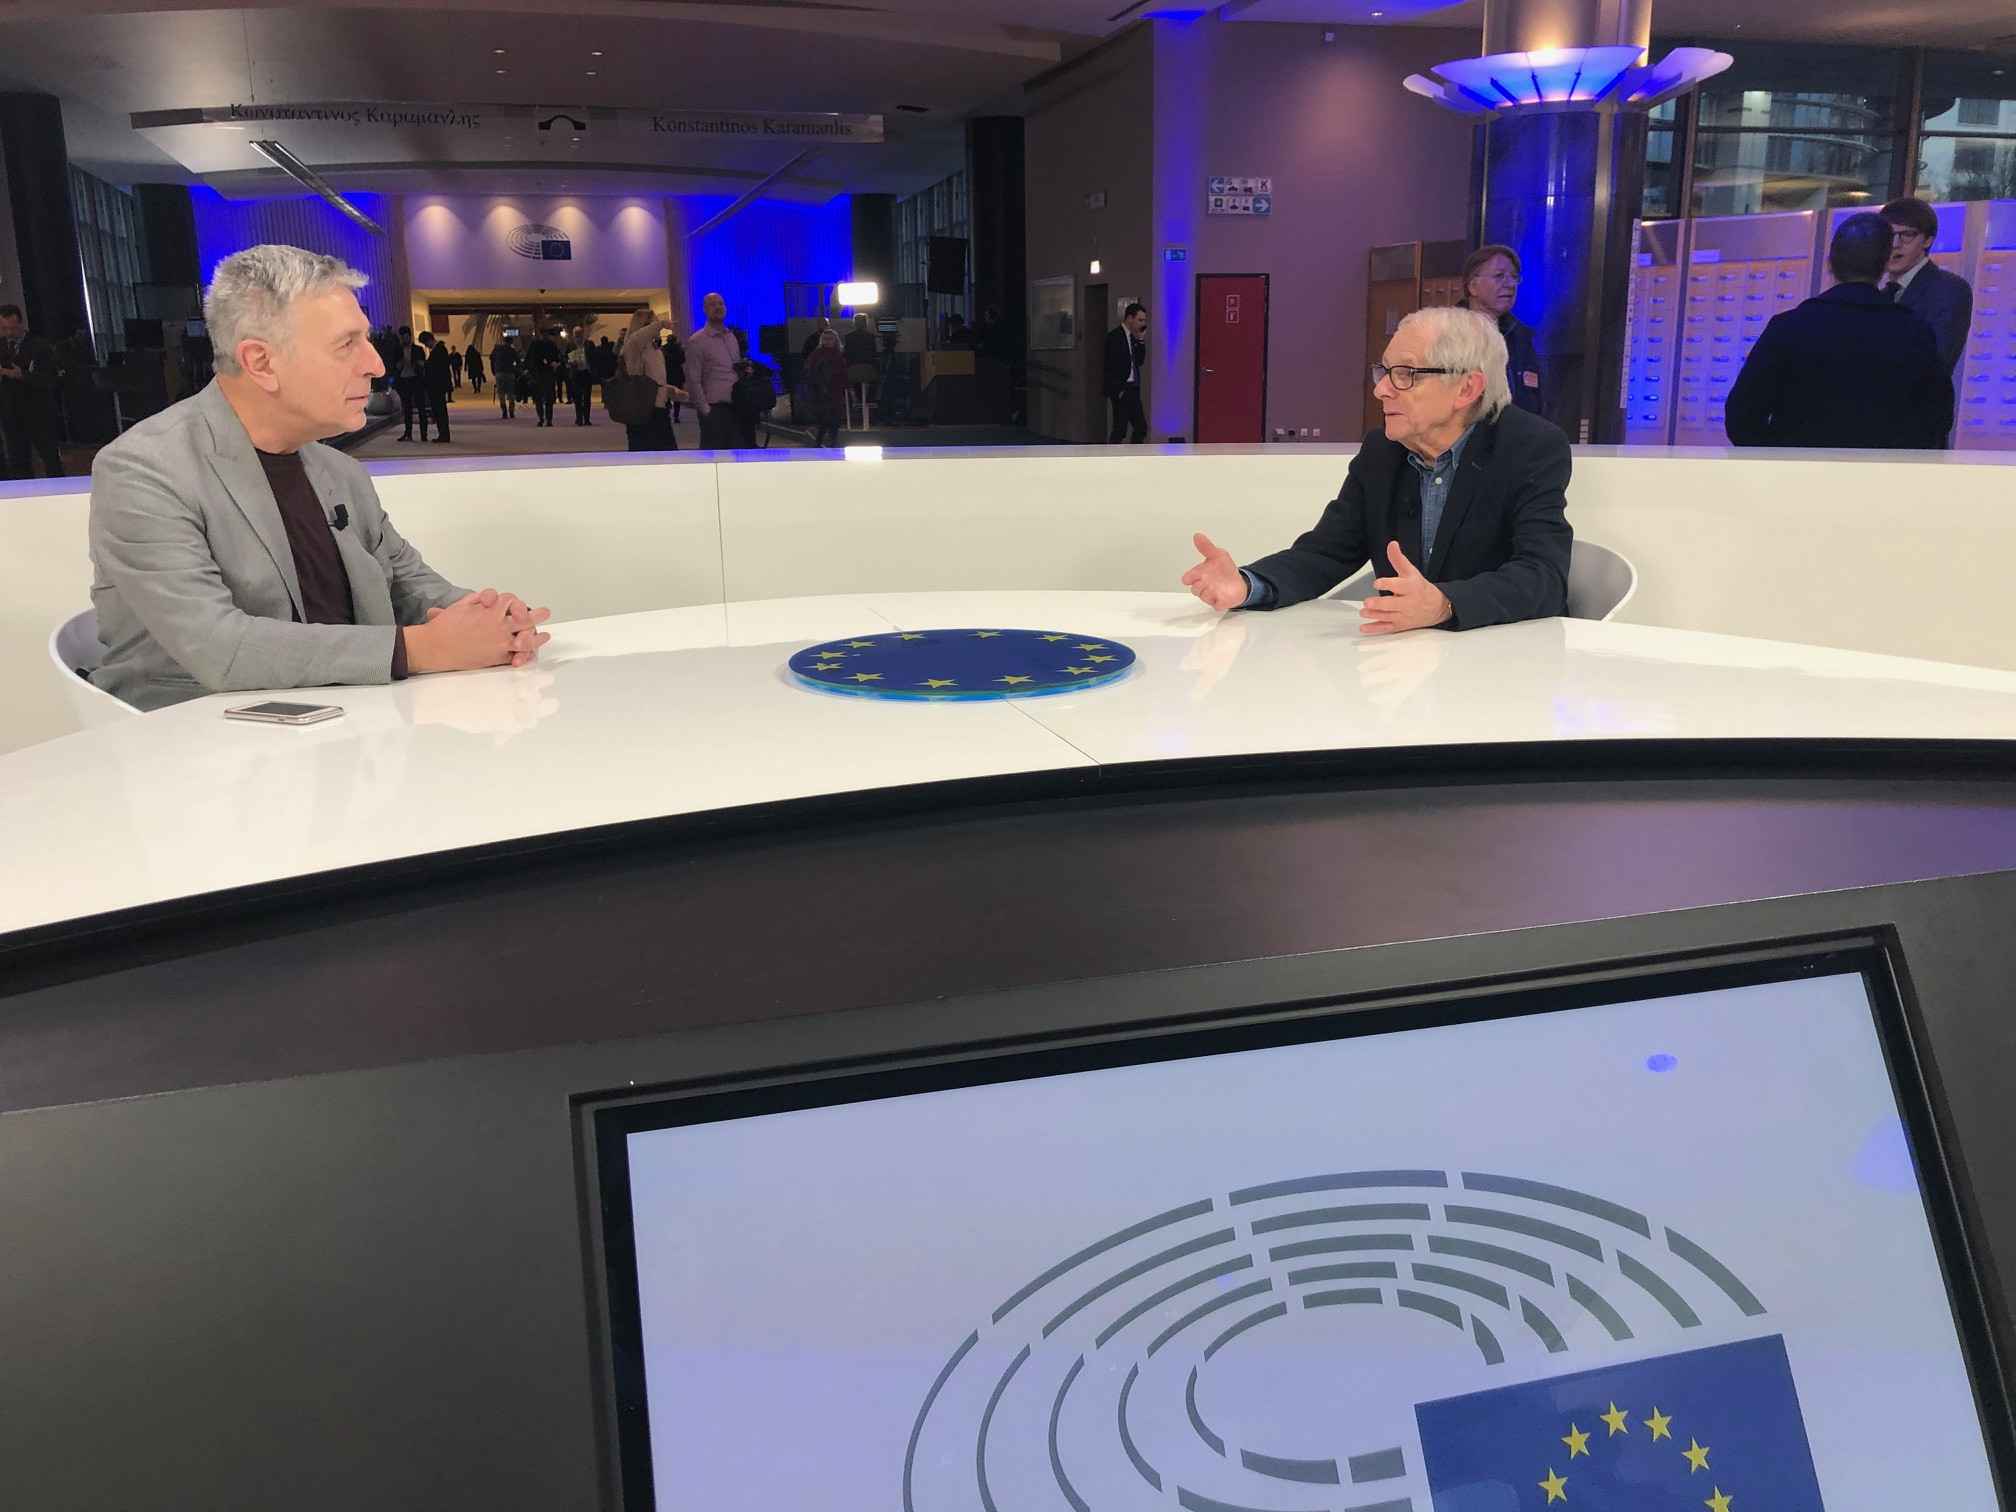 Κούλογλου και Κεν Λόουτς στο Ευρωκοινοβούλιο: Κανείς δεν… απουσίαζε! [Βίντεο]